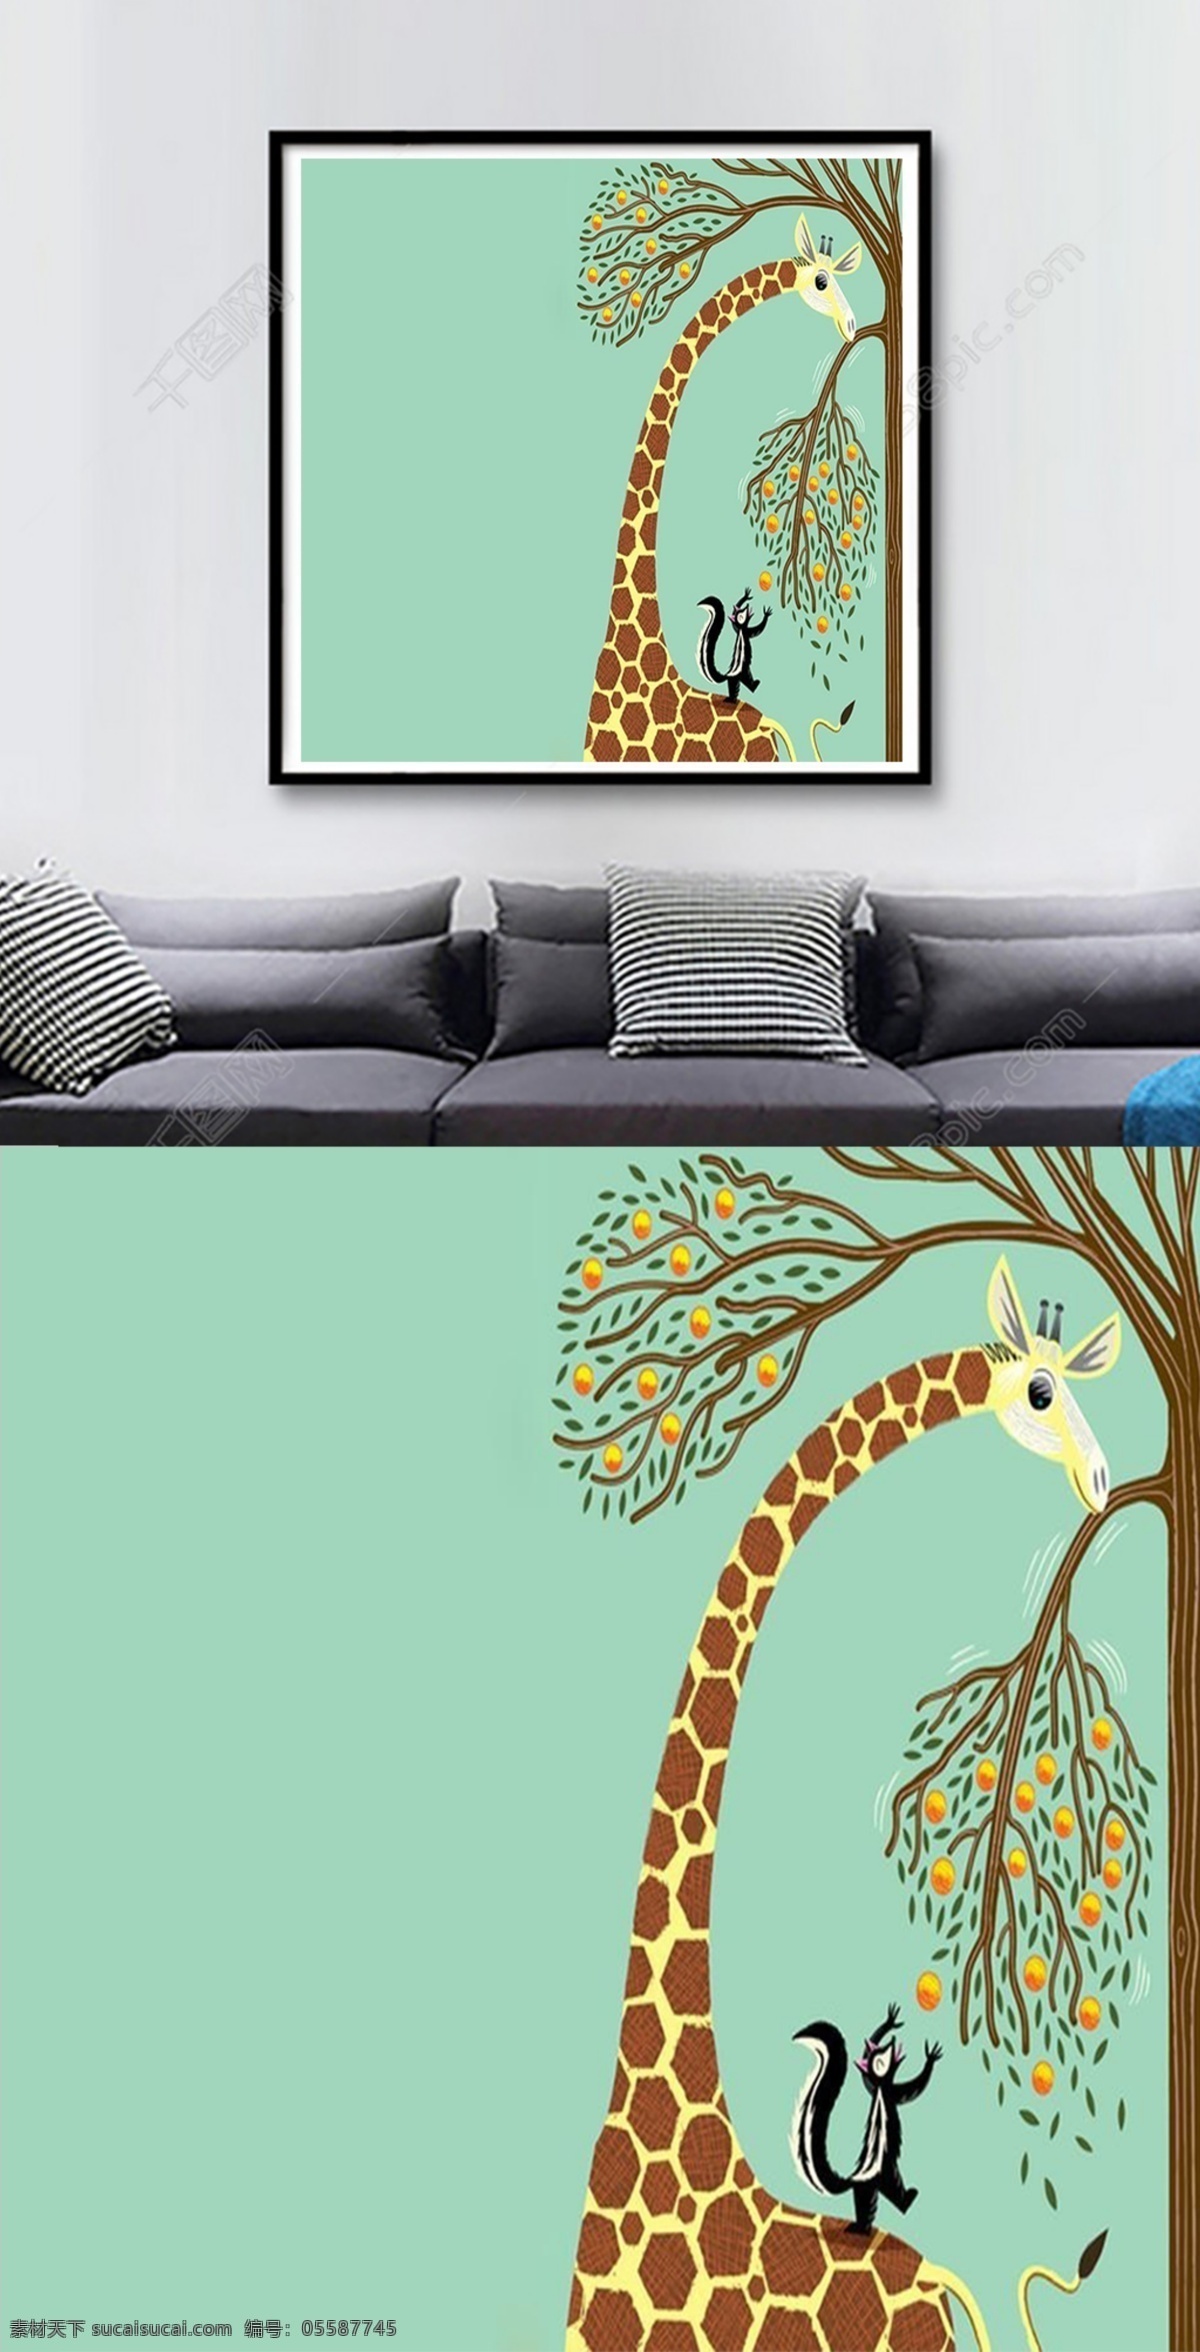 方 图 卡通 长颈鹿 松鼠 客厅 装饰画 方图 果实 蓝色 树木